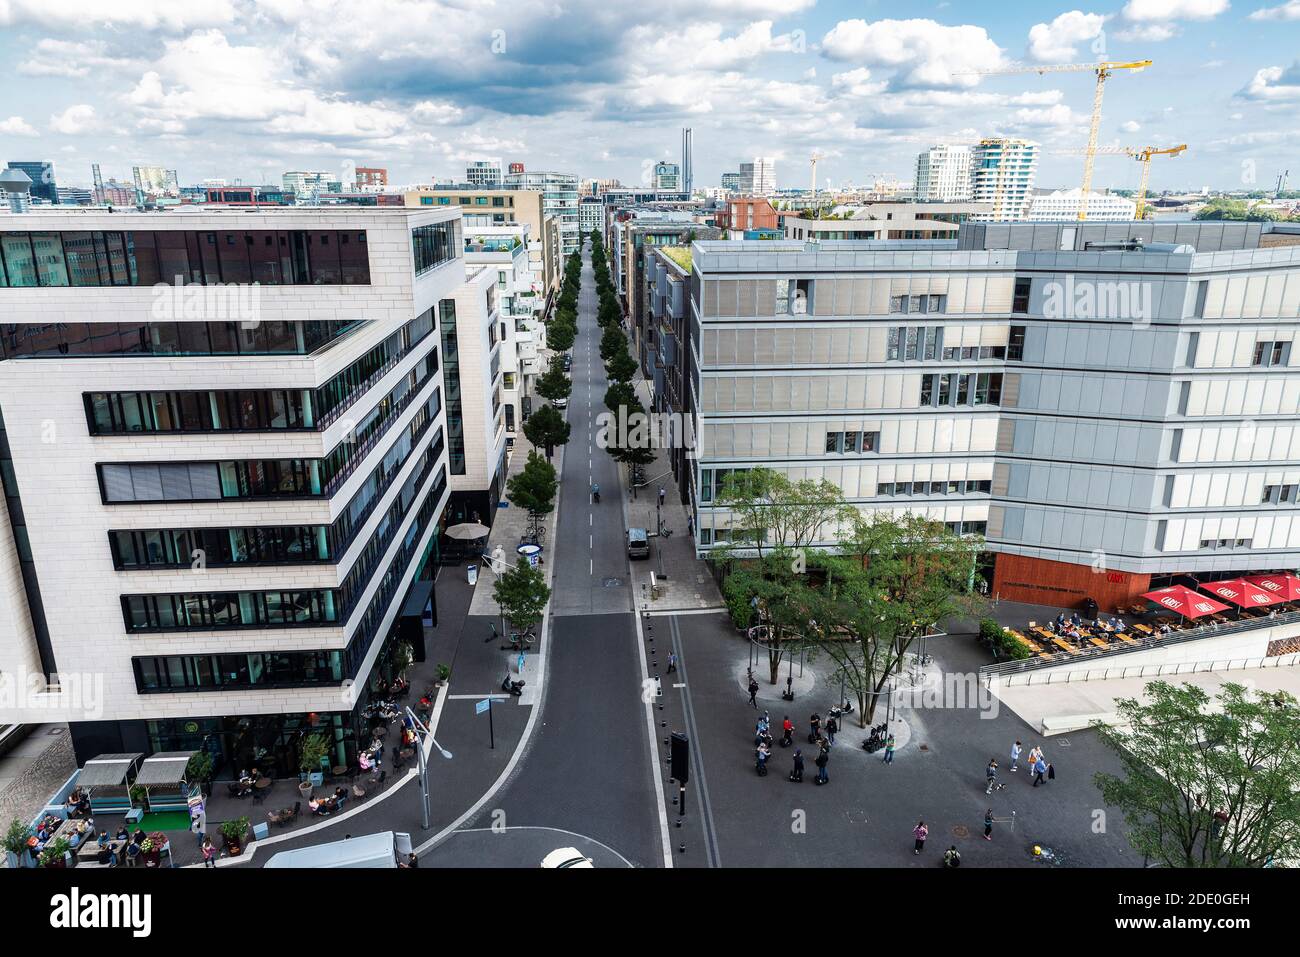 Hamburg, Deutschland - 21. August 2019: Überblick über eine Straße mit modernen Gebäuden, Stadtstraße mit Verkehr und Menschen in der Umgebung, in der HafenCity, Hamburg, Germ Stockfoto